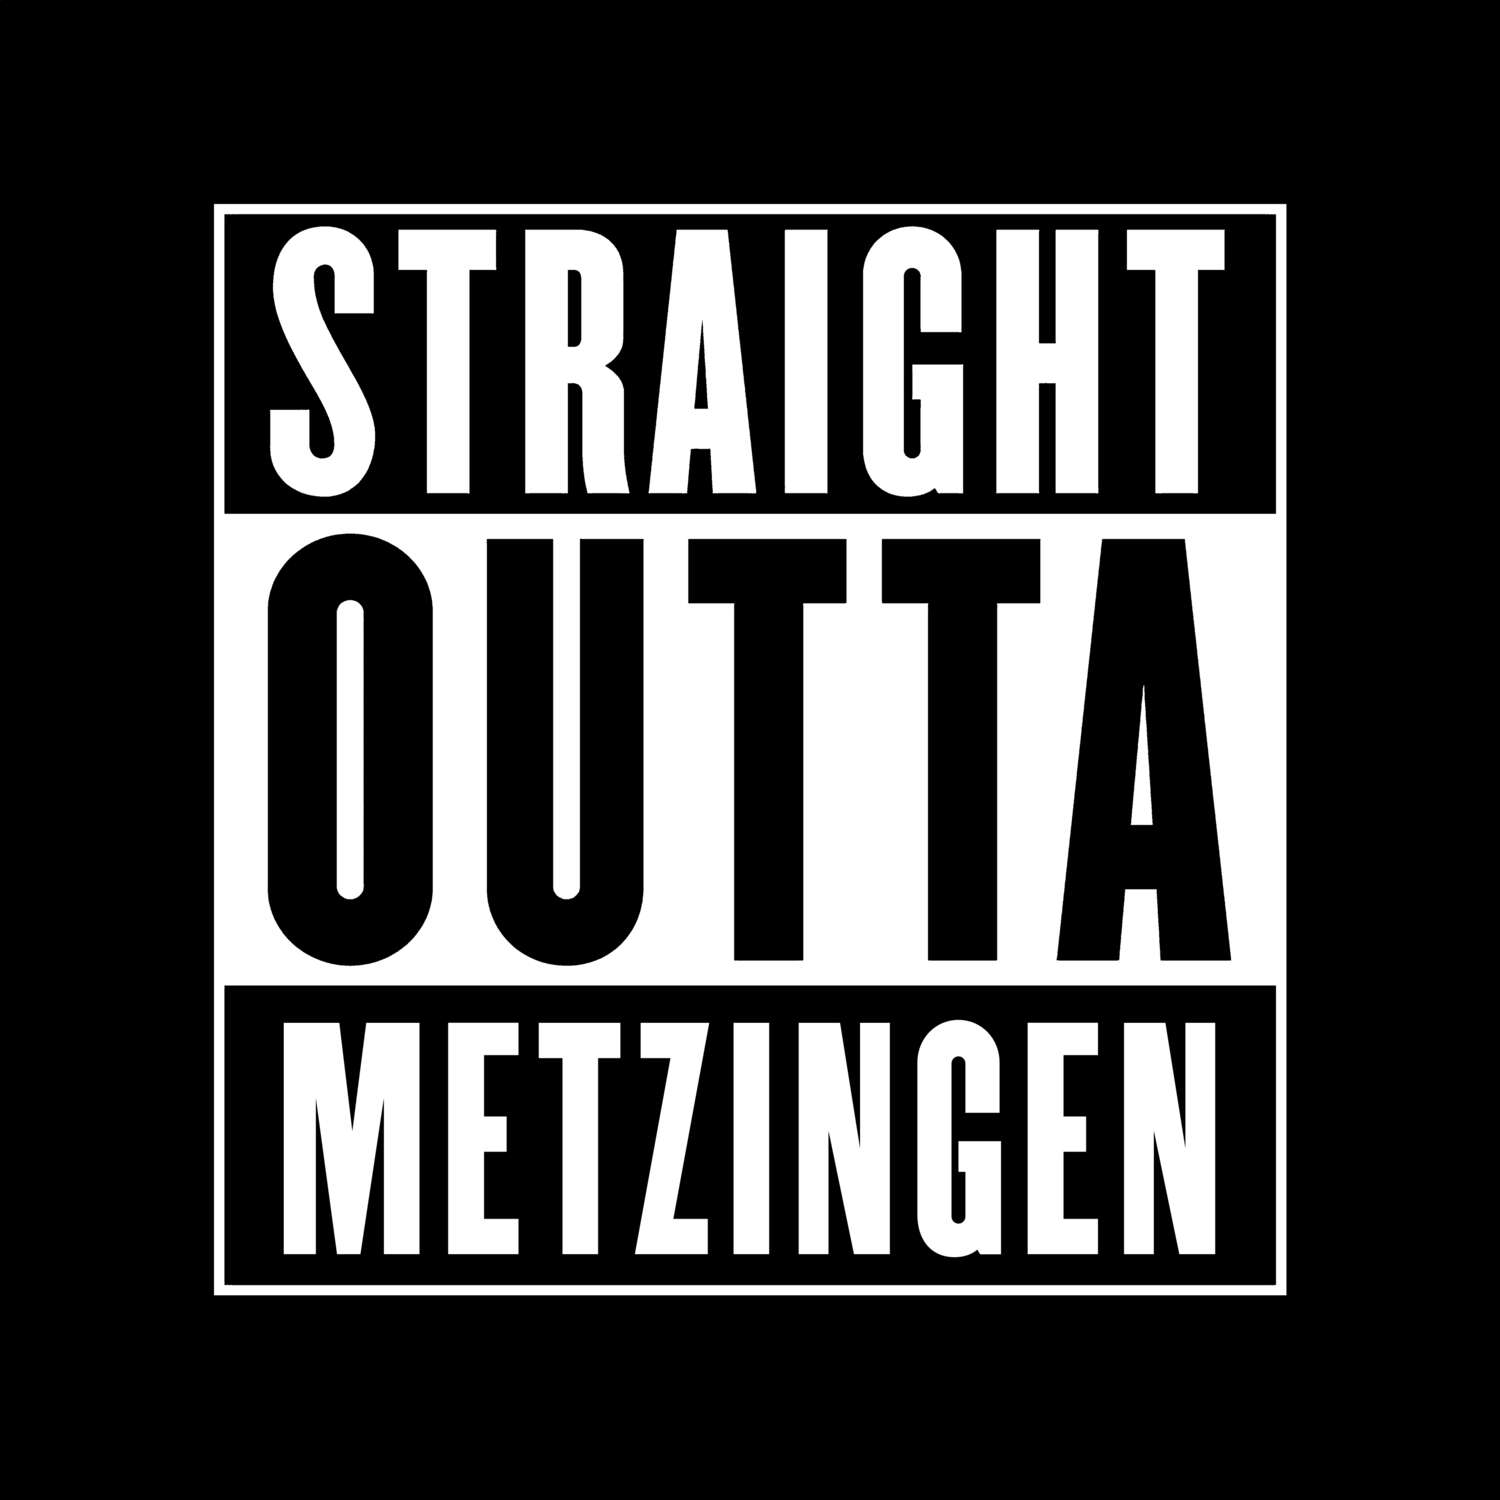 Metzingen T-Shirt »Straight Outta«